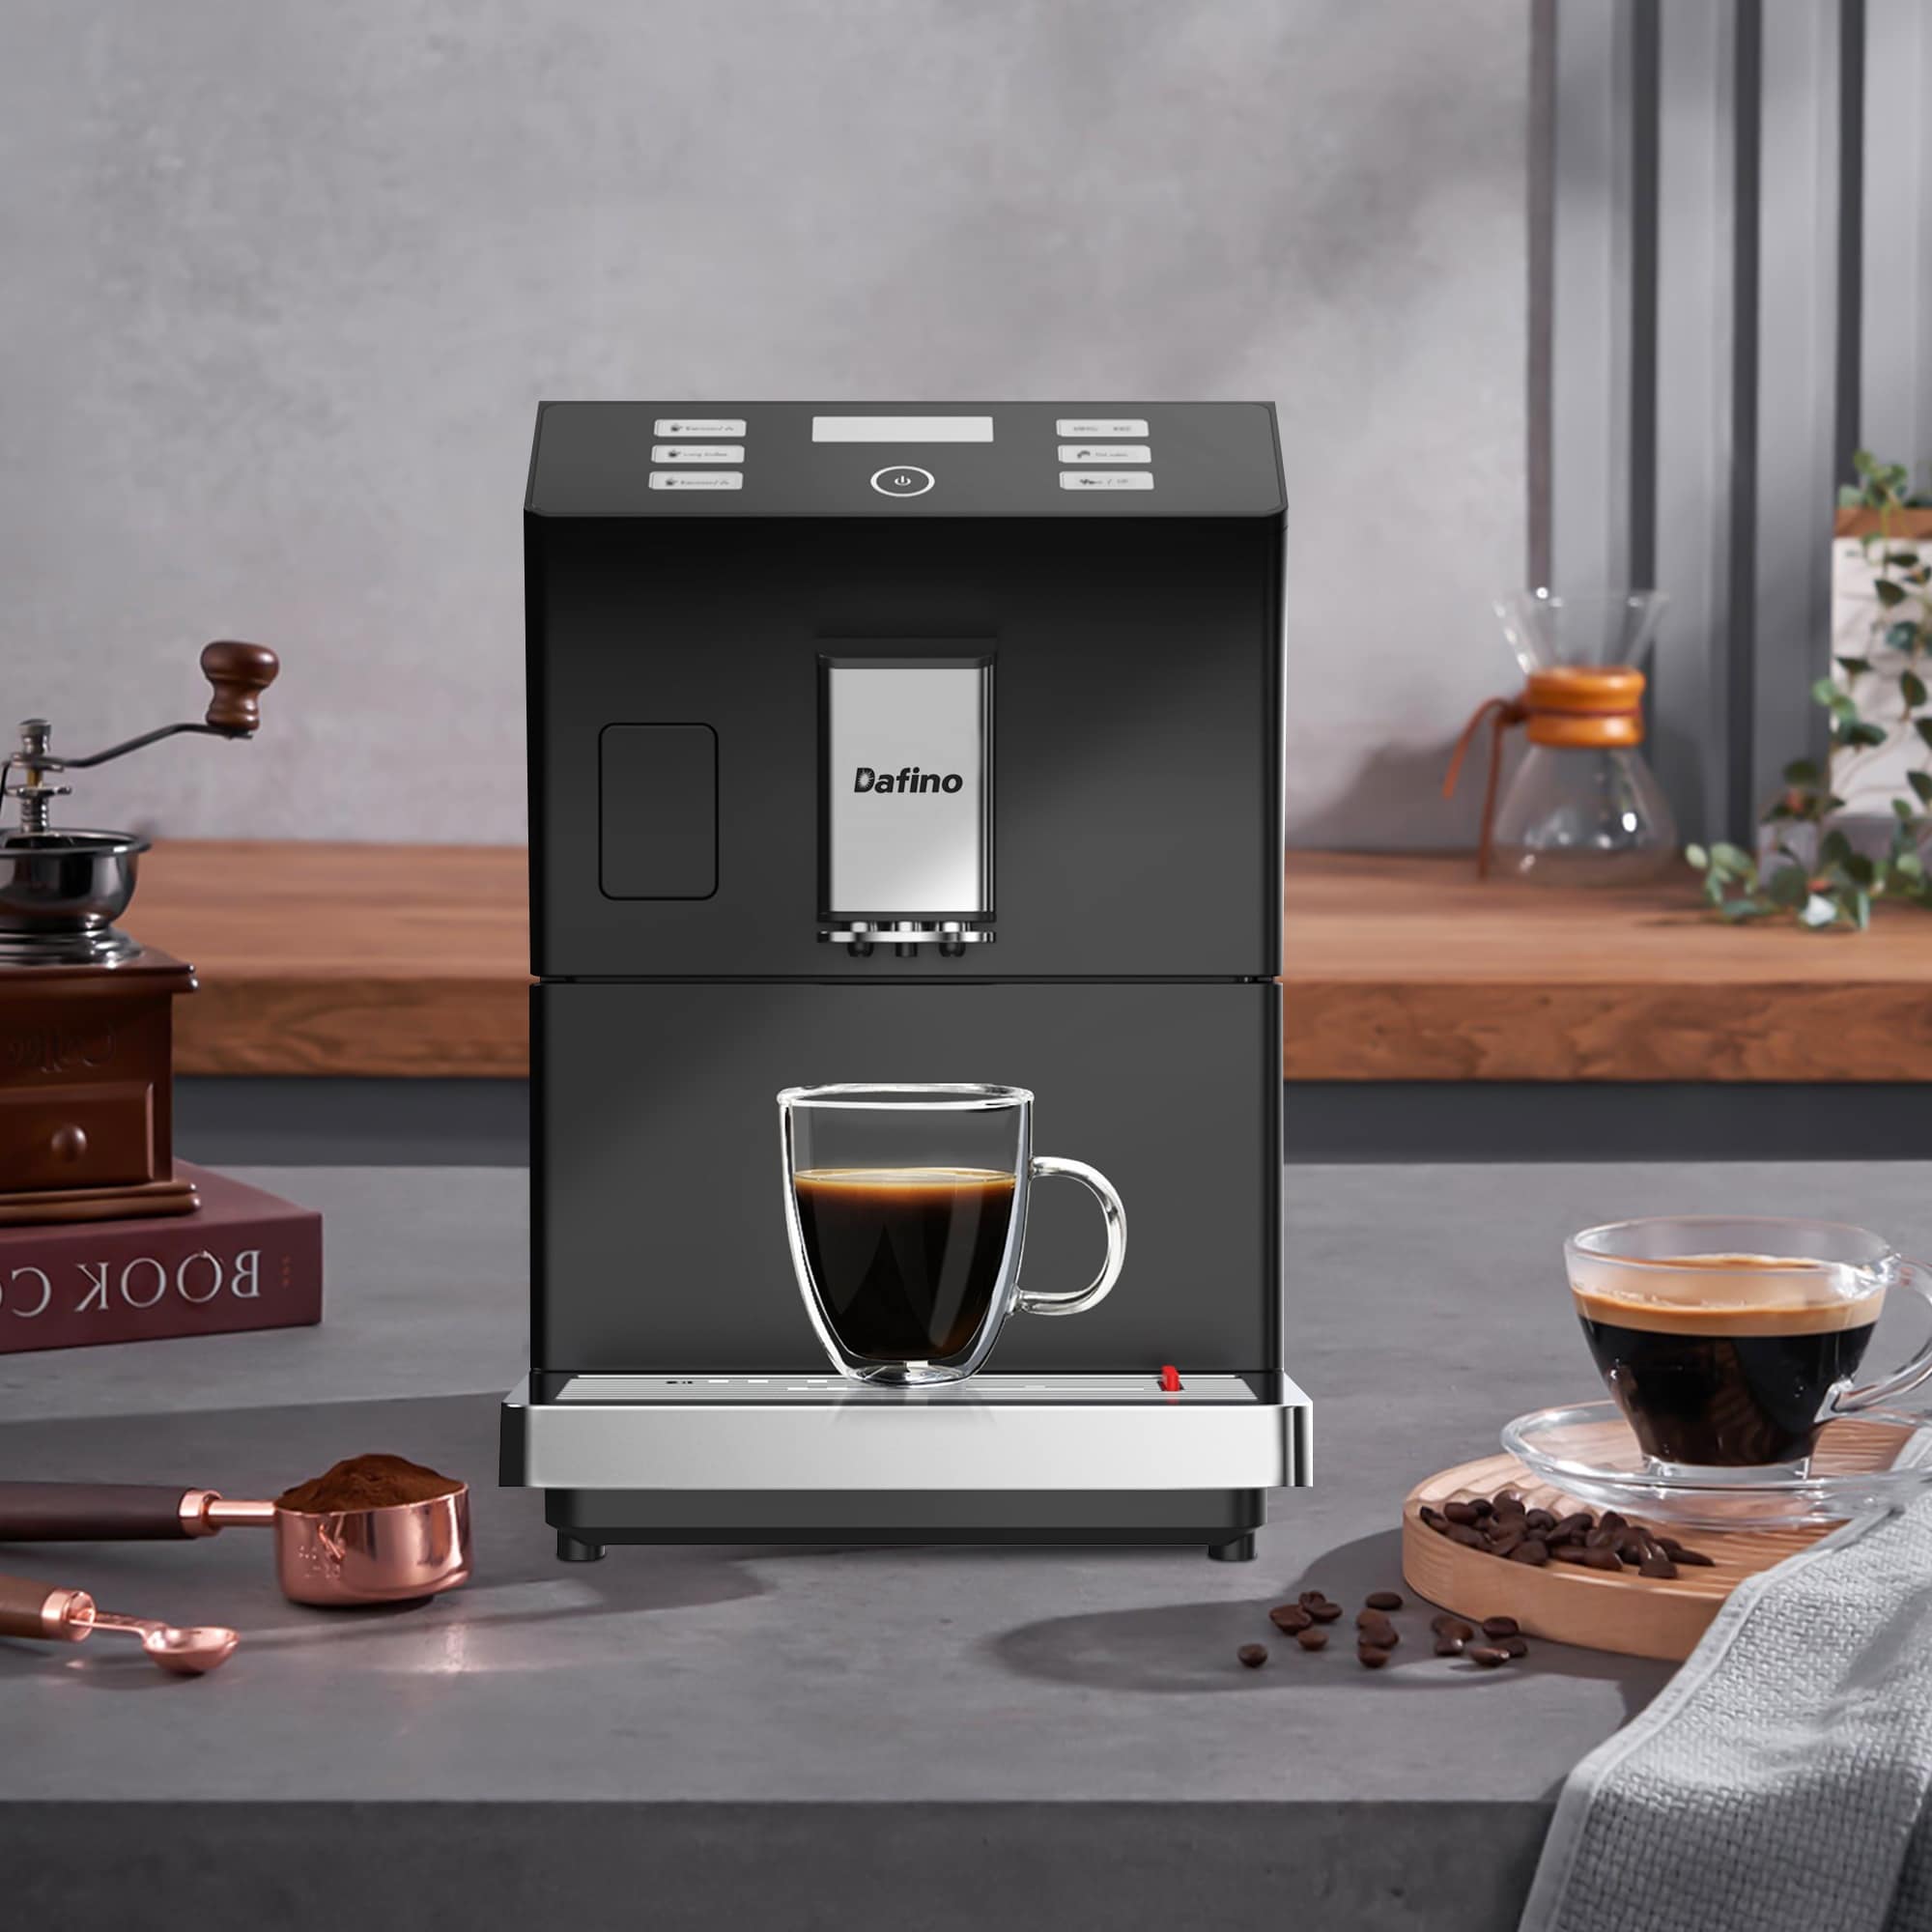 https://ak1.ostkcdn.com/images/products/is/images/direct/219517da1225893e500292da0b99d6e18a65c2a2/Super-Automatic-Espresso-Coffee-Machine.jpg